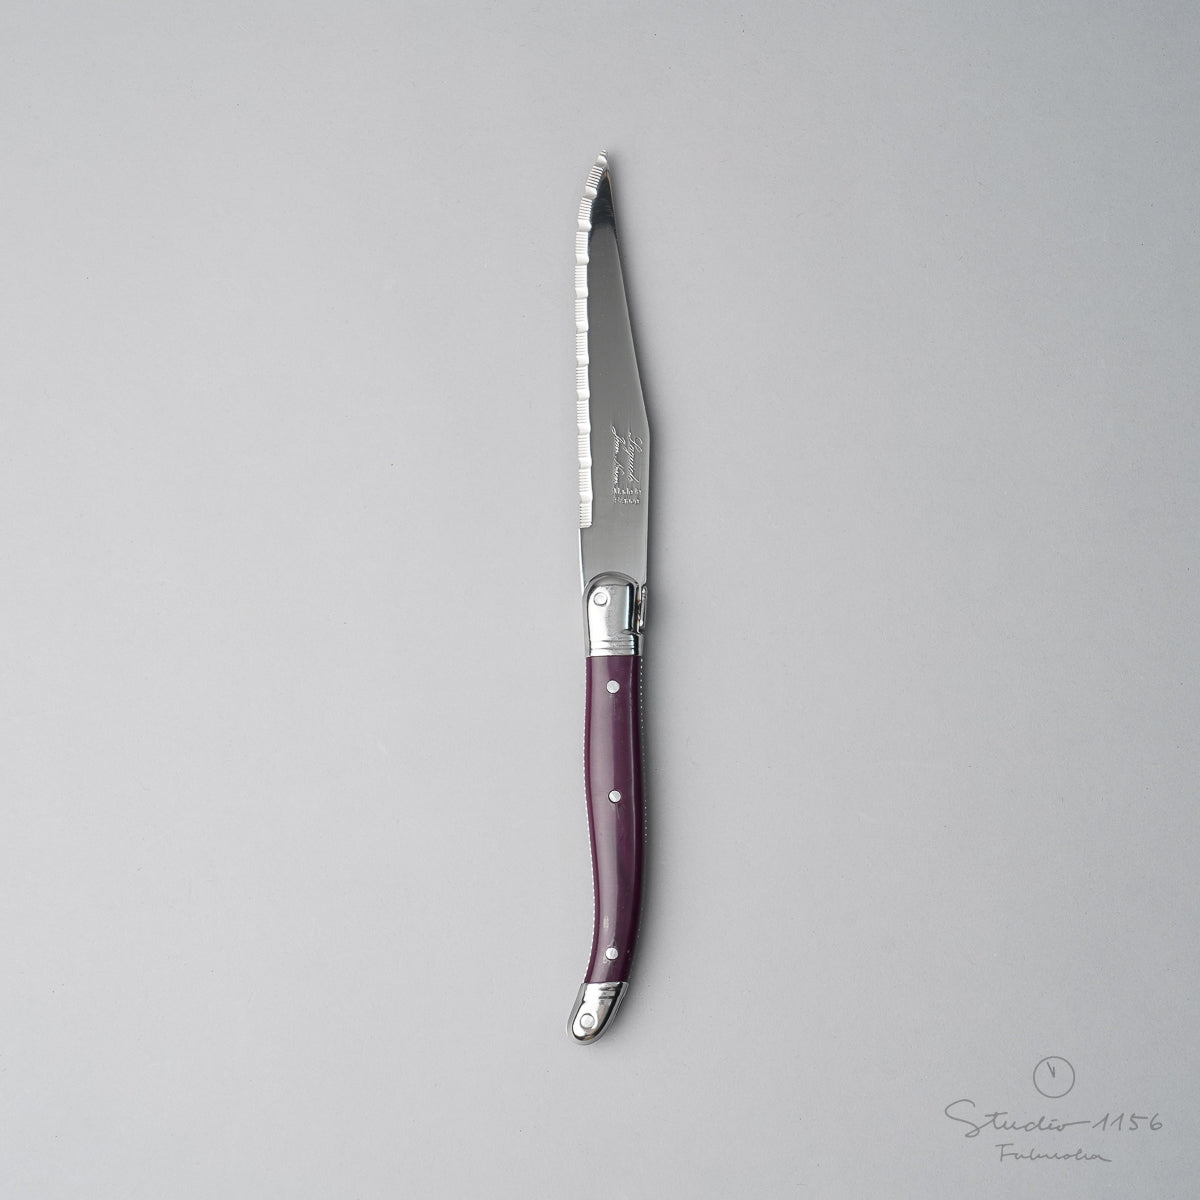 ジャン・ネロン ライヨール ステーキナイフ 23cm Aubergine(オーベルジン) Cutlery-neron Studio1156